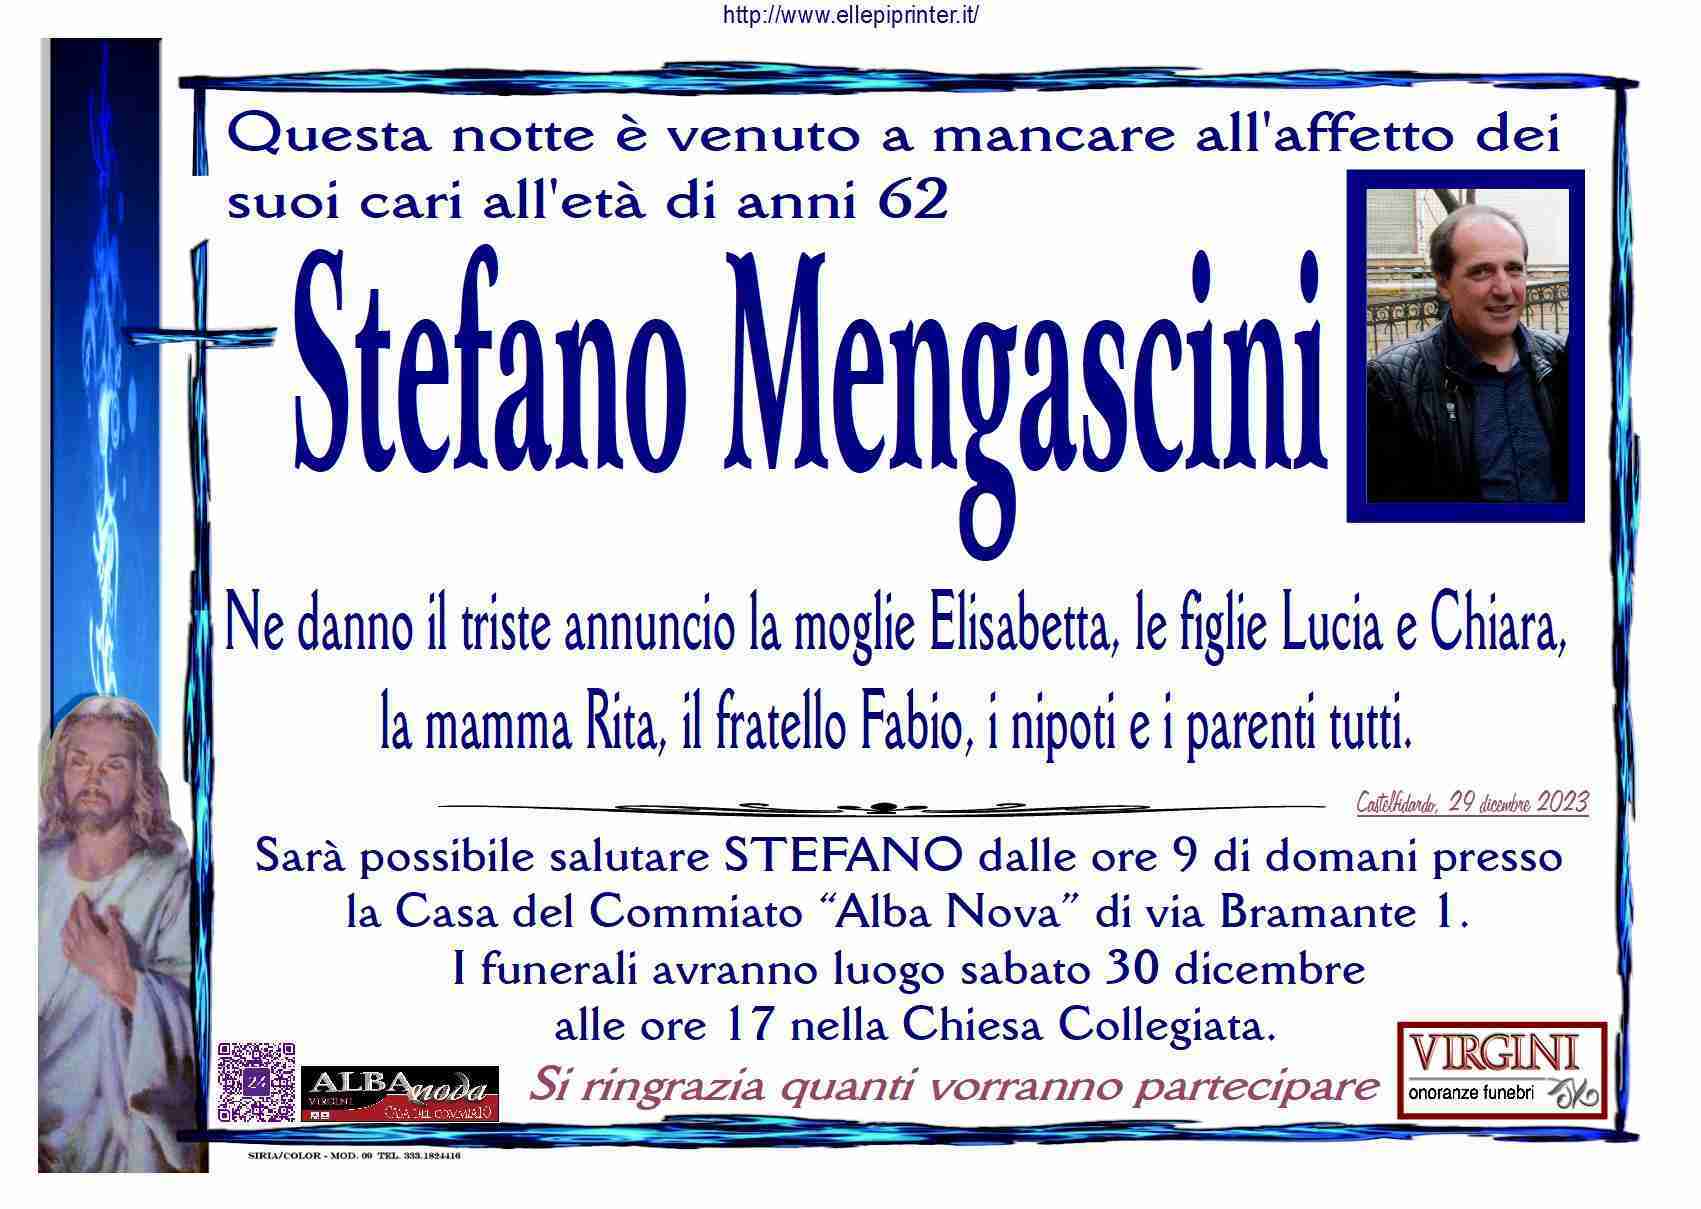 Stefano Mengascini